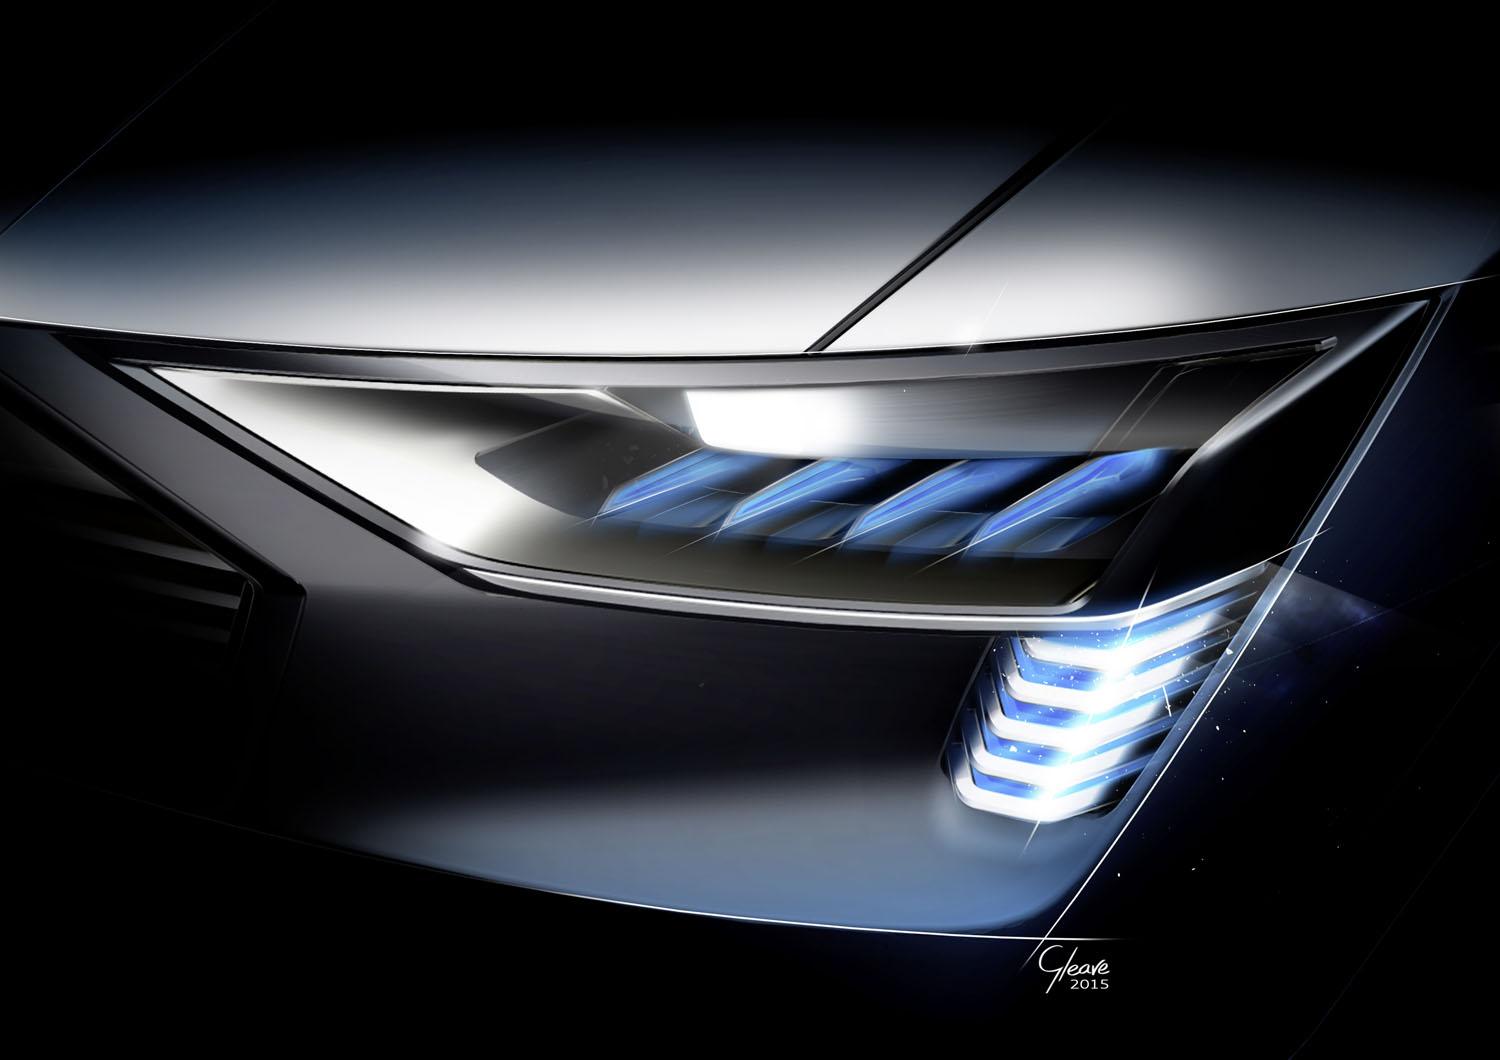 Audi e-tron quattro concept sketch